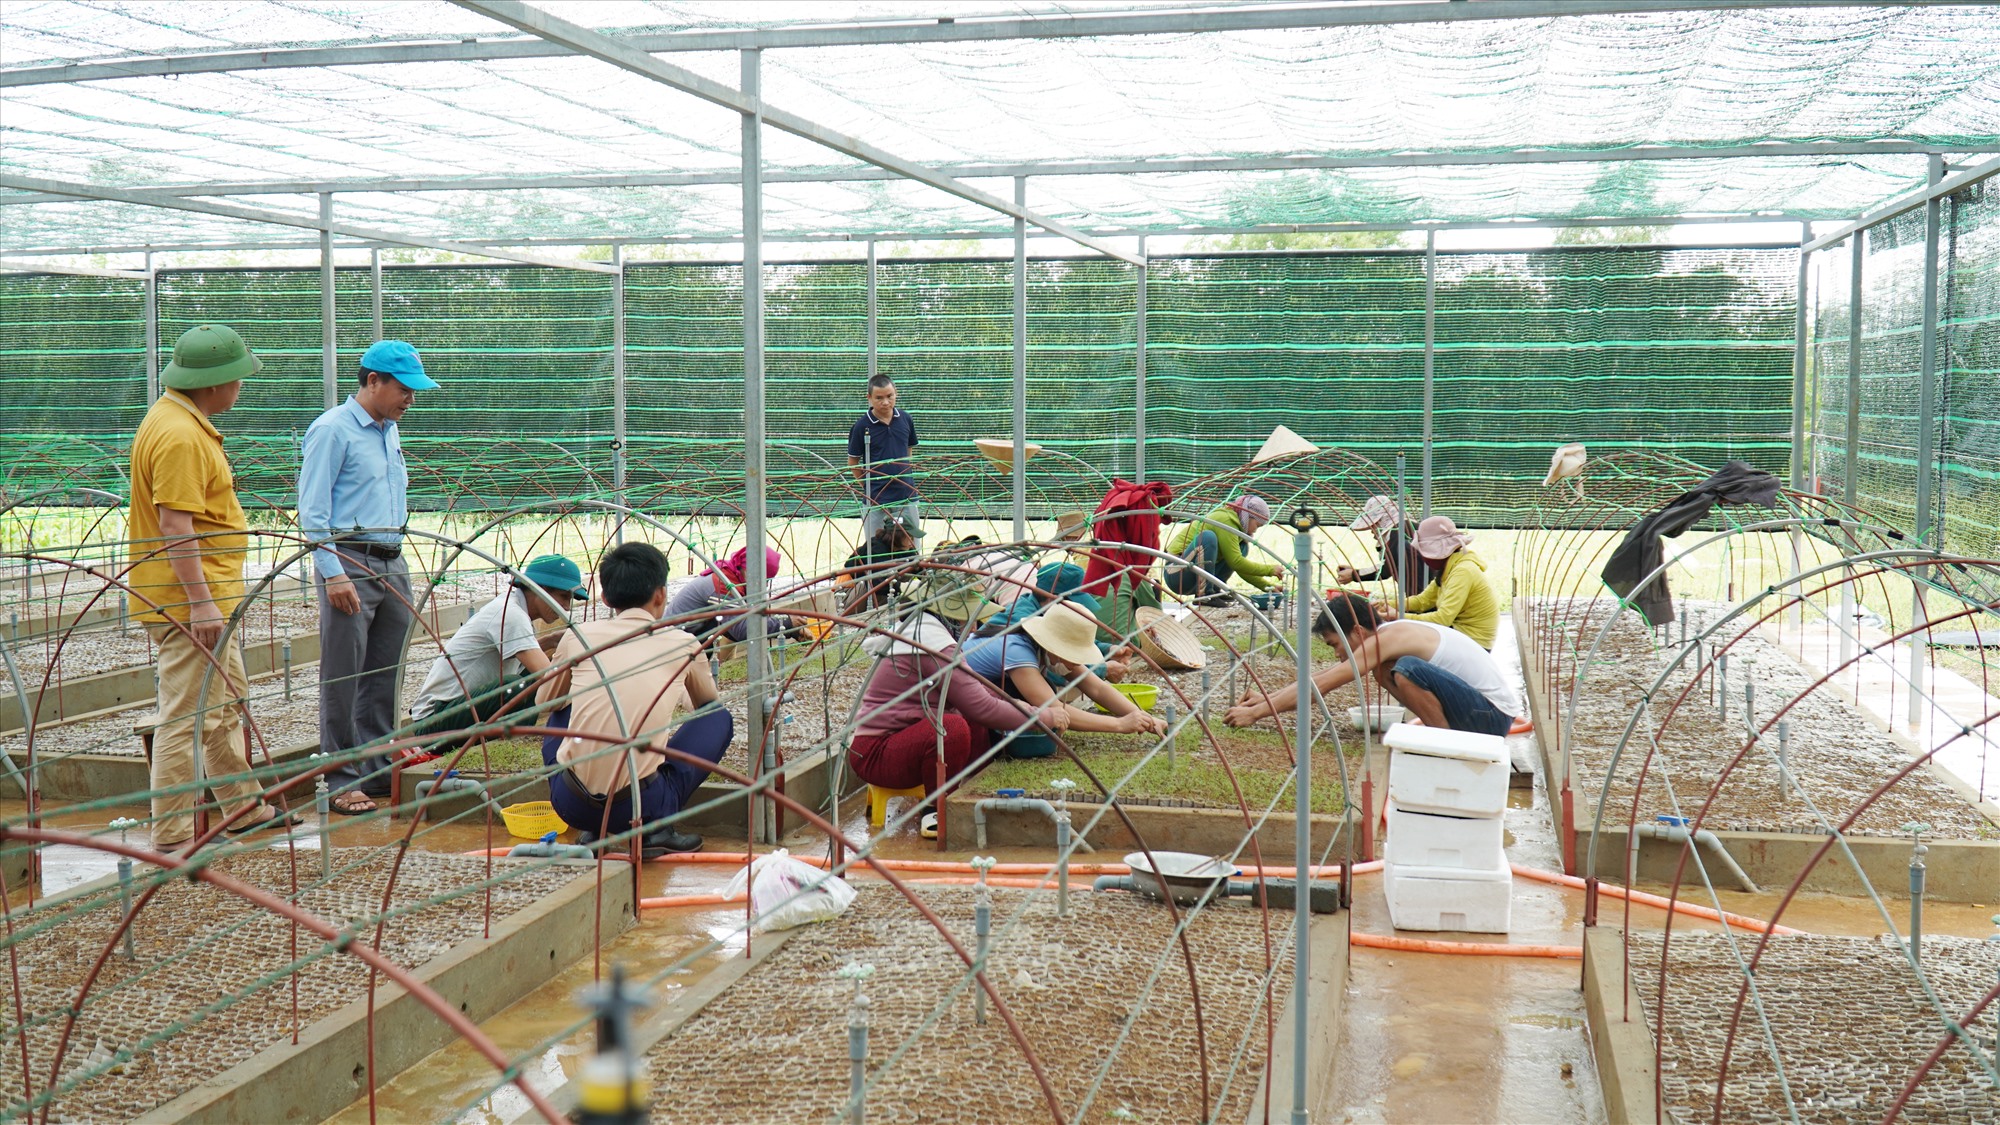 Xã viên HTX Lâm nghiệp bền vững Keo Sơn đang cấy cây giống keo lai mầm vào bầu -Ảnh: Anh Vũ